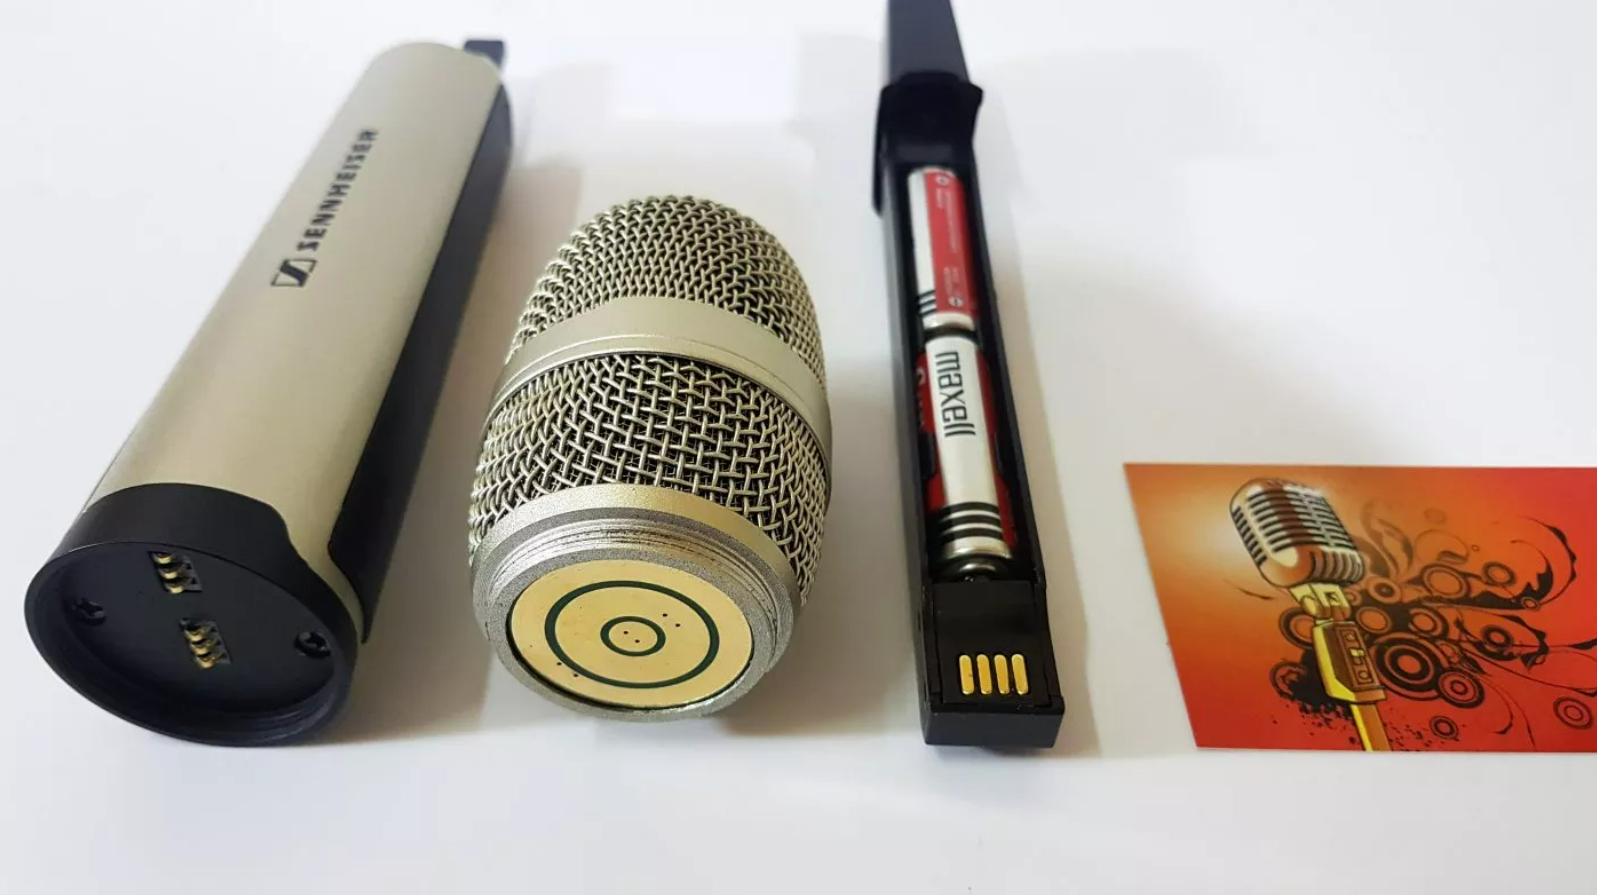 [MIỄN SHIP] Micro Không Dây Sennheiser SKM 9000 4 Anten- Dòng Micro Chuyên Hát Karaoke Và Trình Diễn Sân Khấu - Công Nghệ Kỹ Thuật Số Đẳng Cấp Thế Giới - Thiết Kế Tối Ưu, Trang Bị Khả Năng Chống Sốc Hoàn Hảo Bảo Hành 12 Tháng